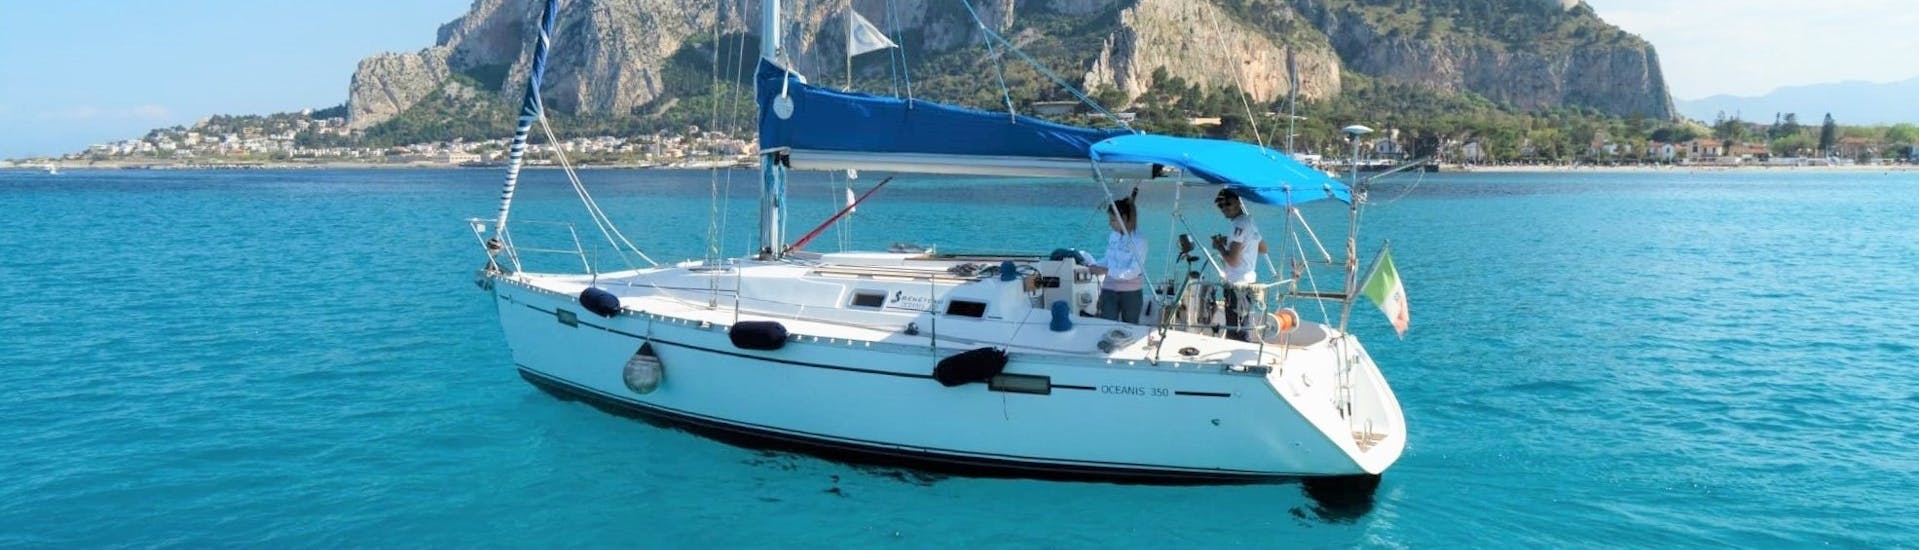 La barca a vela utilizzata da Seica Boat durante la gita privata in barca da Palermo alla spiaggia di Mondello con aperitivo.